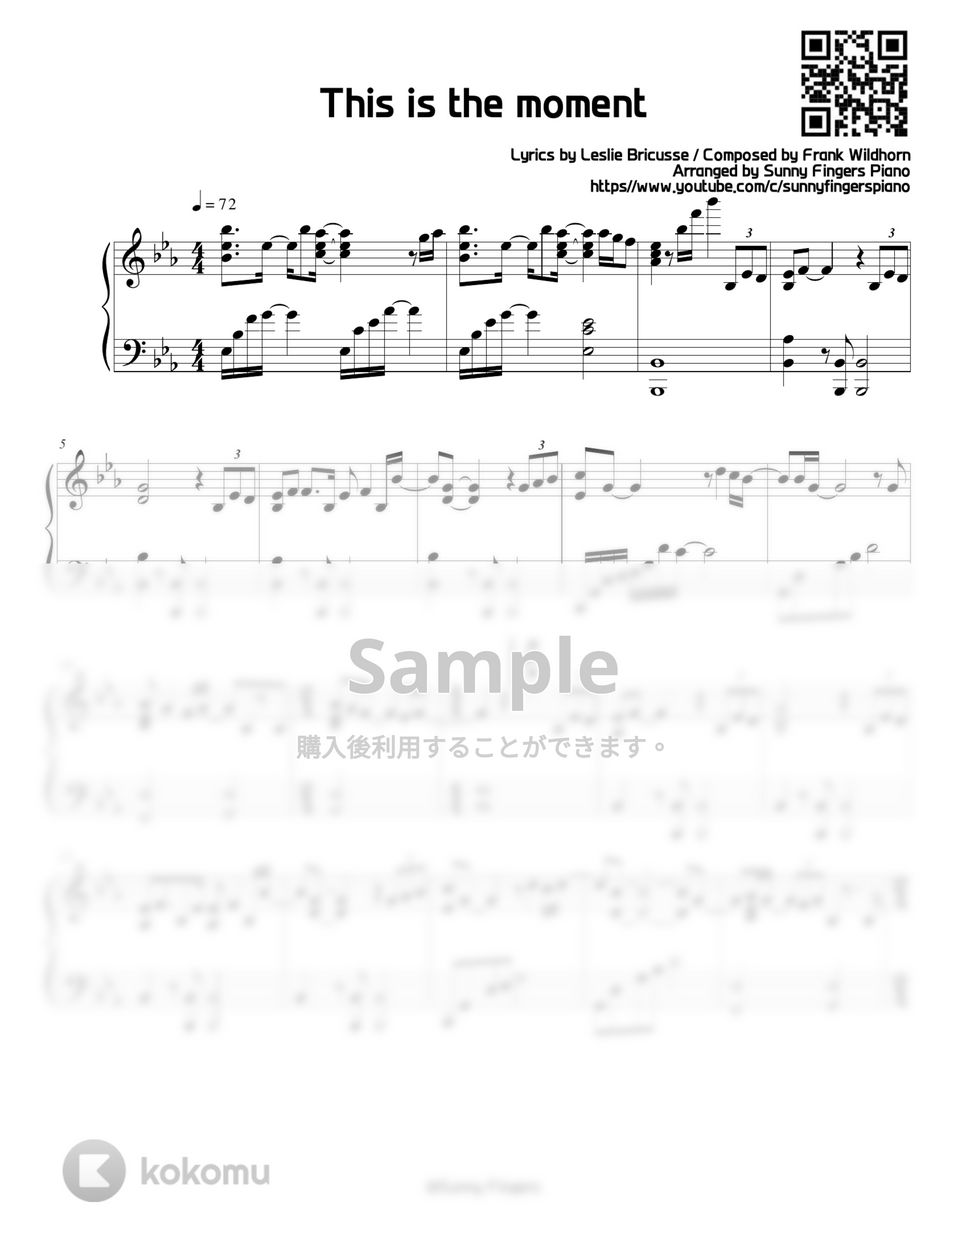 ジキルとハイド - This is the moment by Sunny Fingers Piano